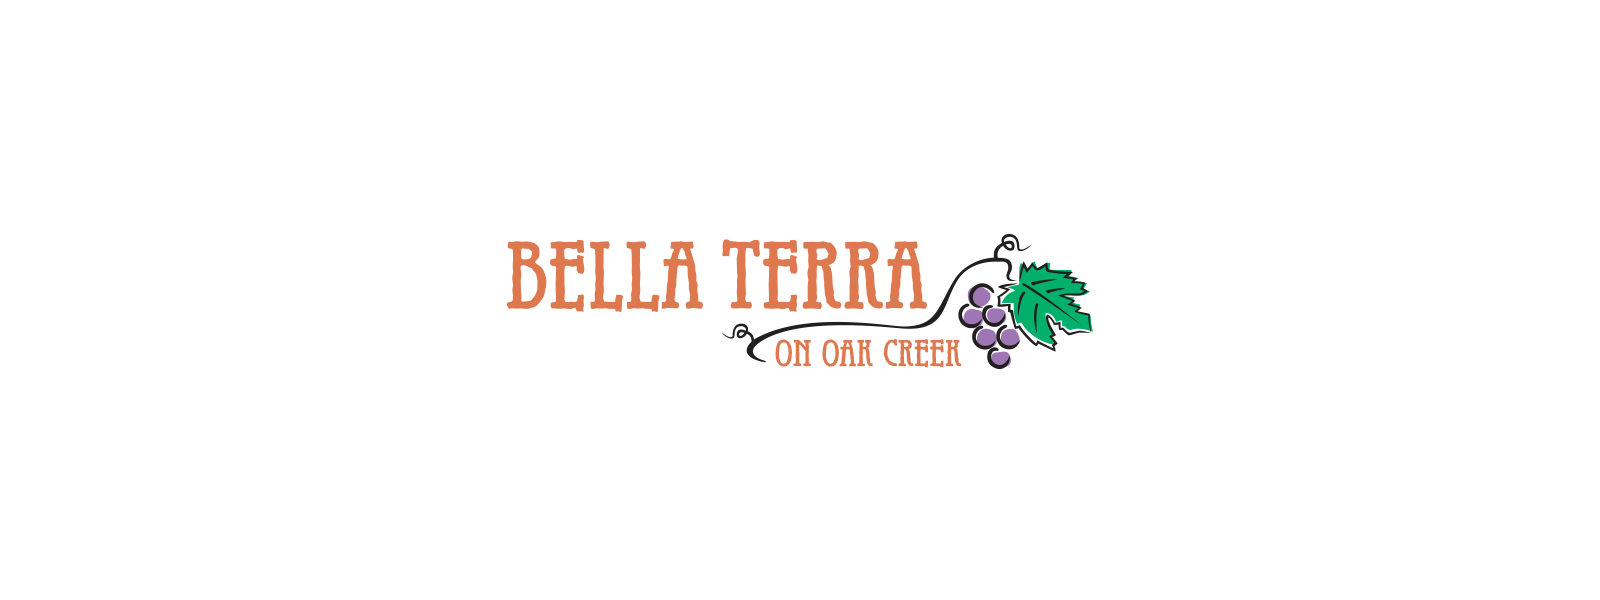 Bella Terra logo